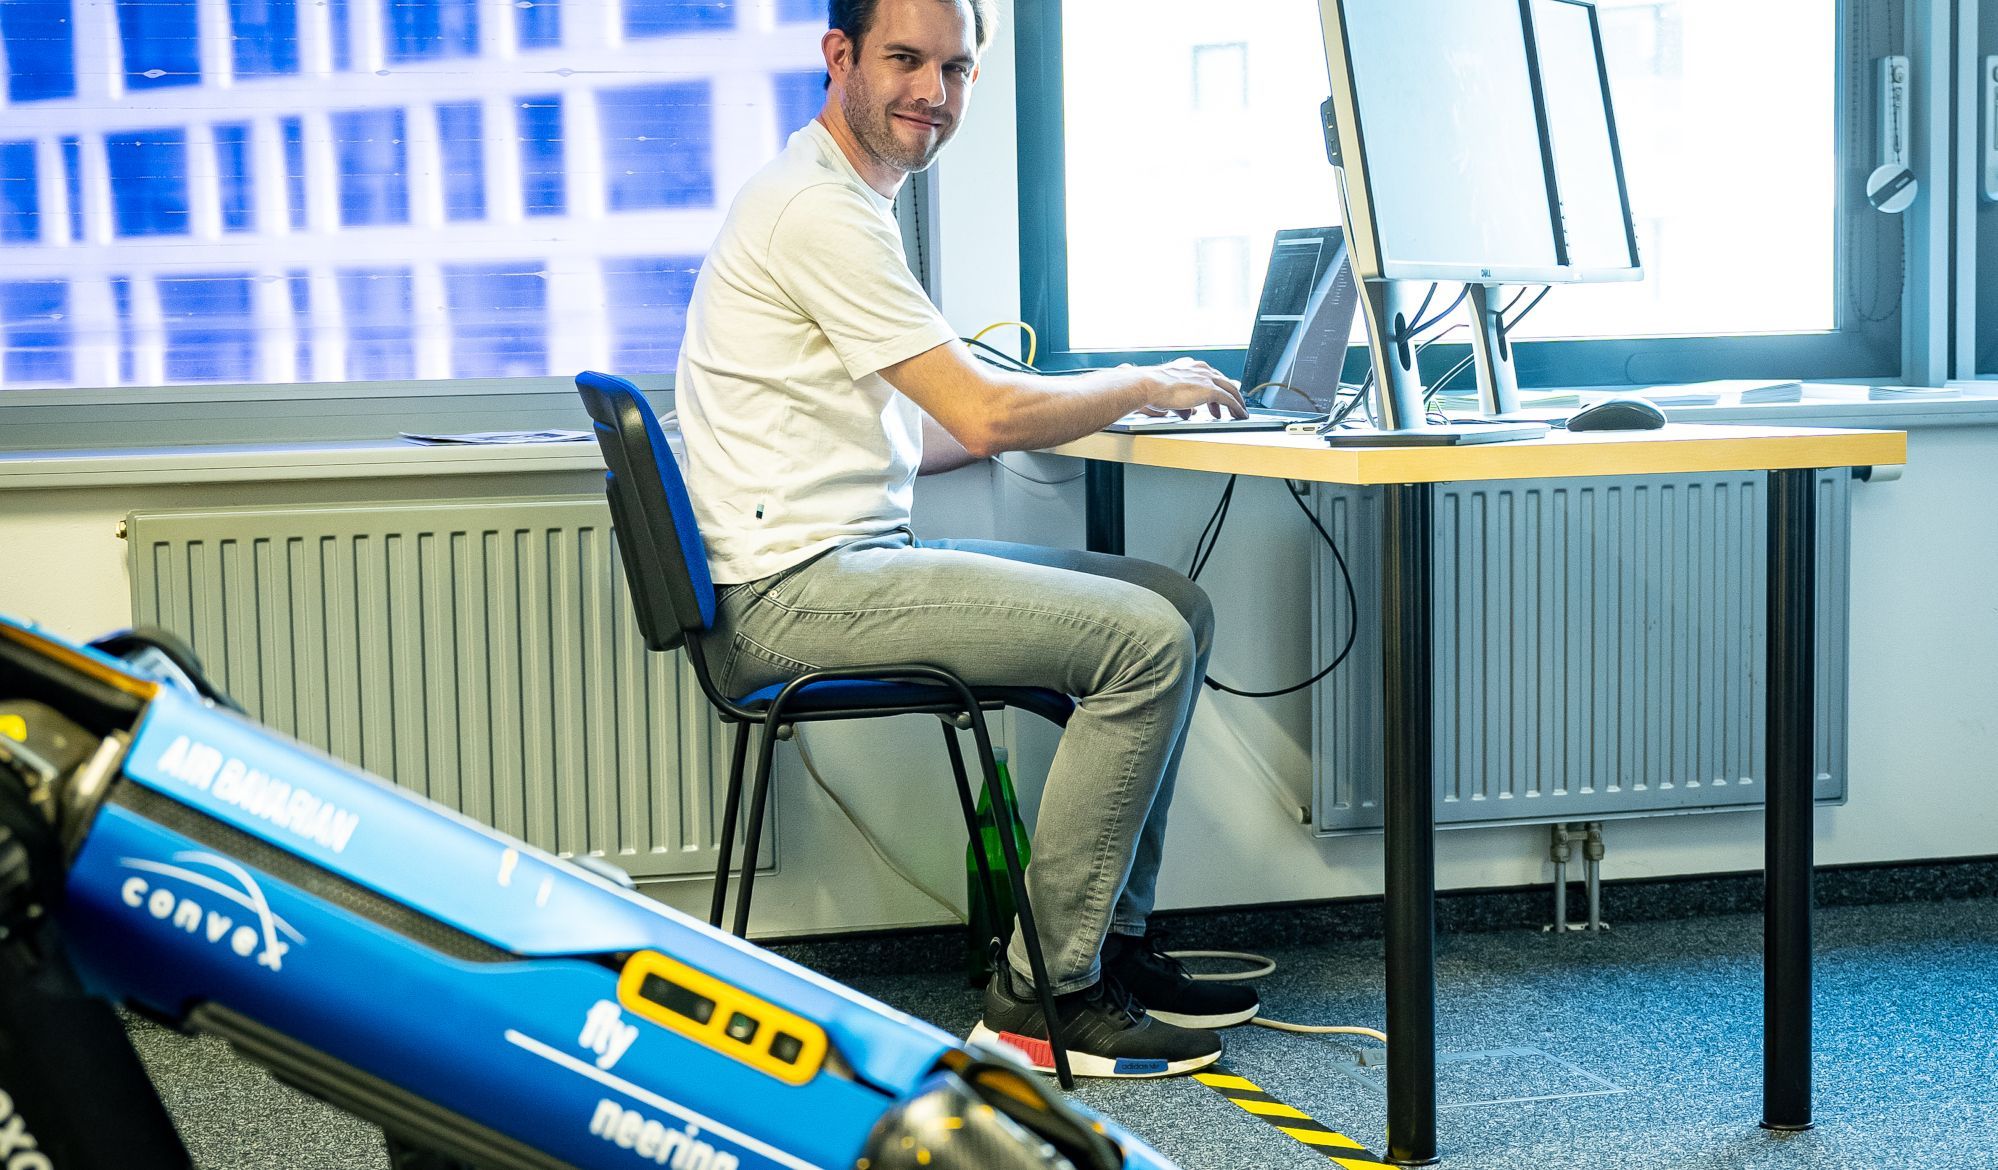 Ein Mann sitzt an einem Computer, neben ihm steht ein Laufroboter